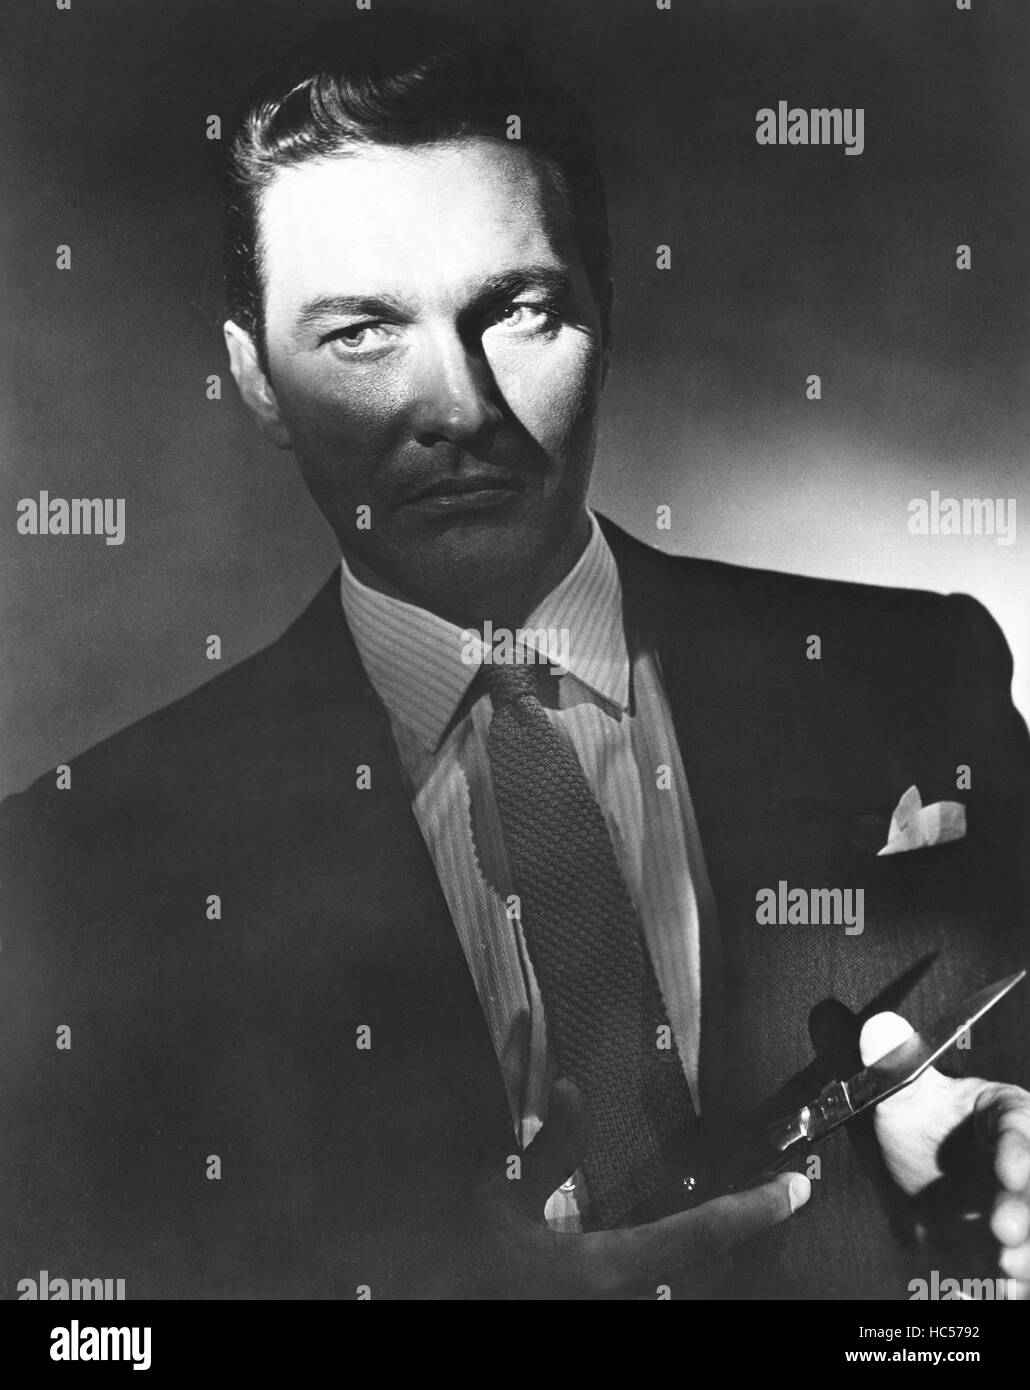 THE SHAKEDOWN, Terence Morgan, 1959 Stock Photo - Alamy